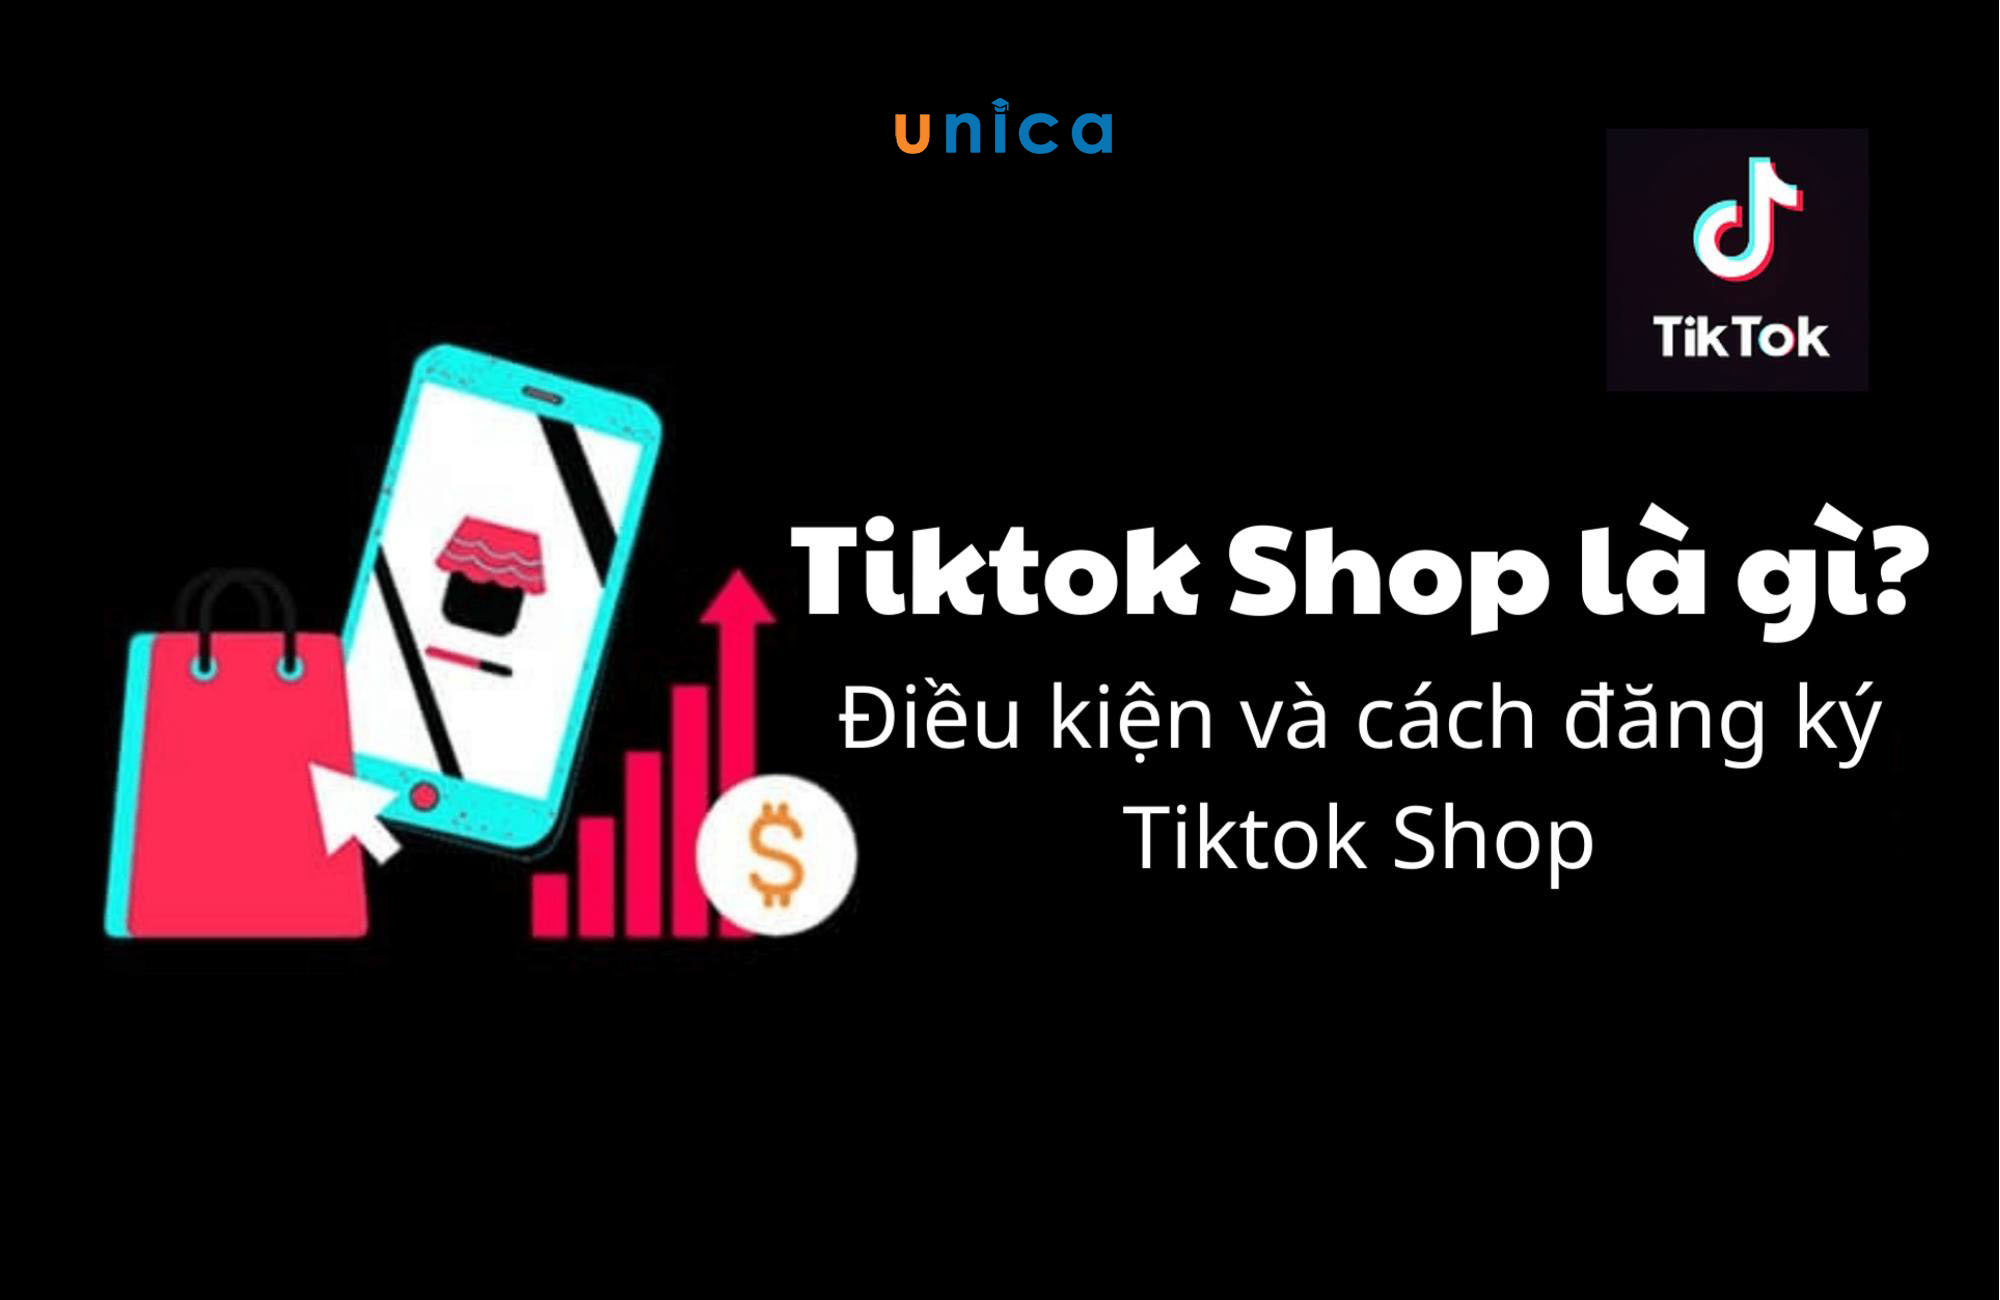 TikTok Shop là gì? Thông tin chi tiết từ A-Z về TikTok Shop